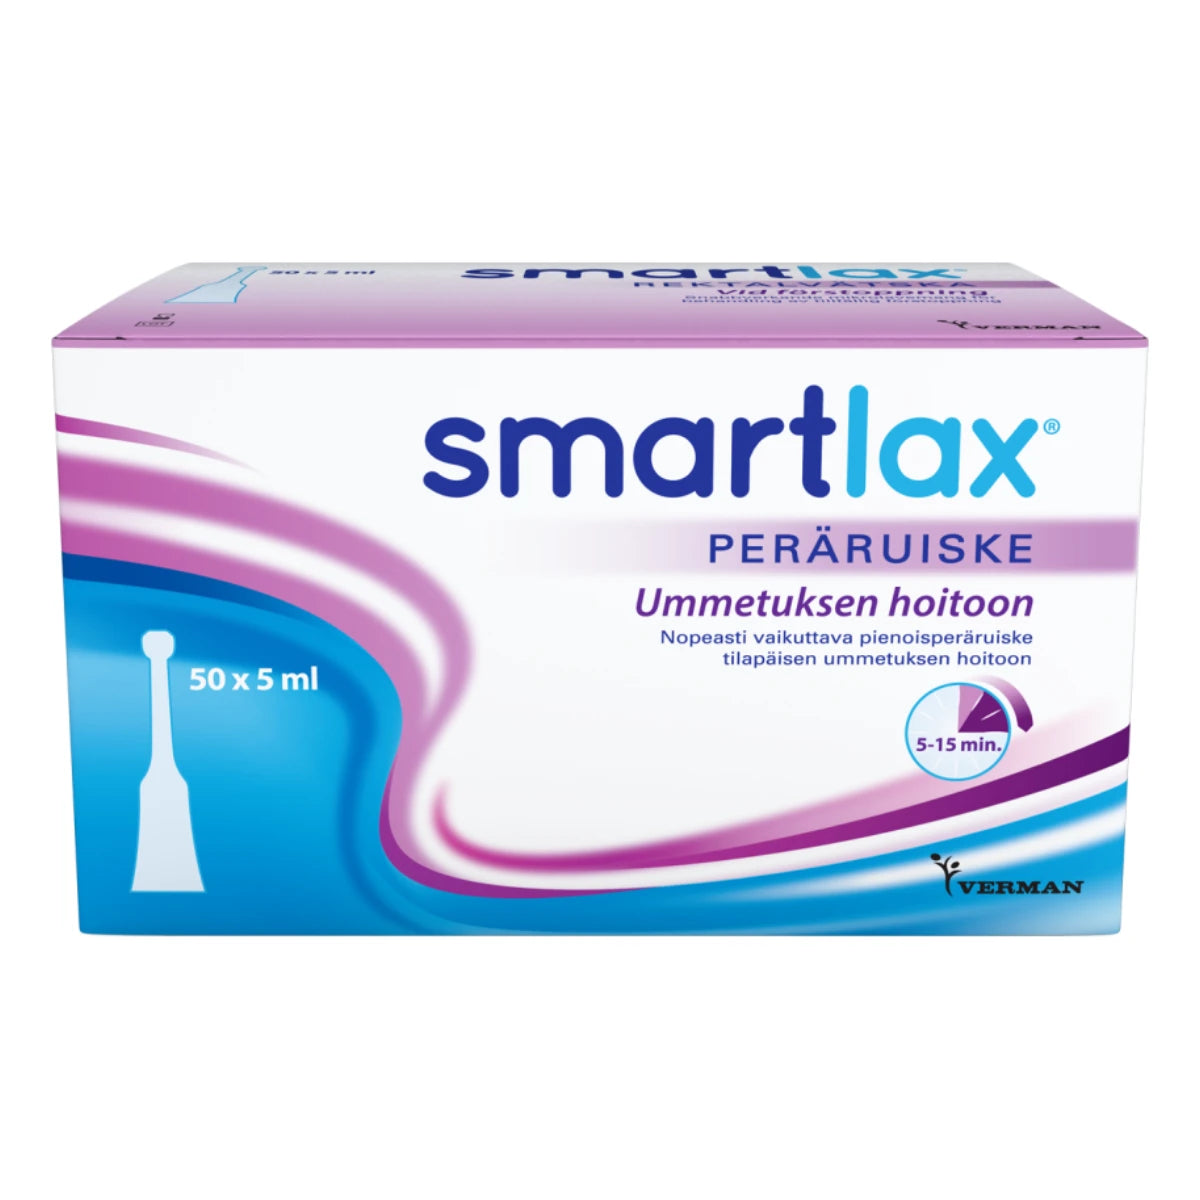 SMARTLAX peräruiske 50x5 ml nopeasti vaikuttava ummetuksen hoitoon